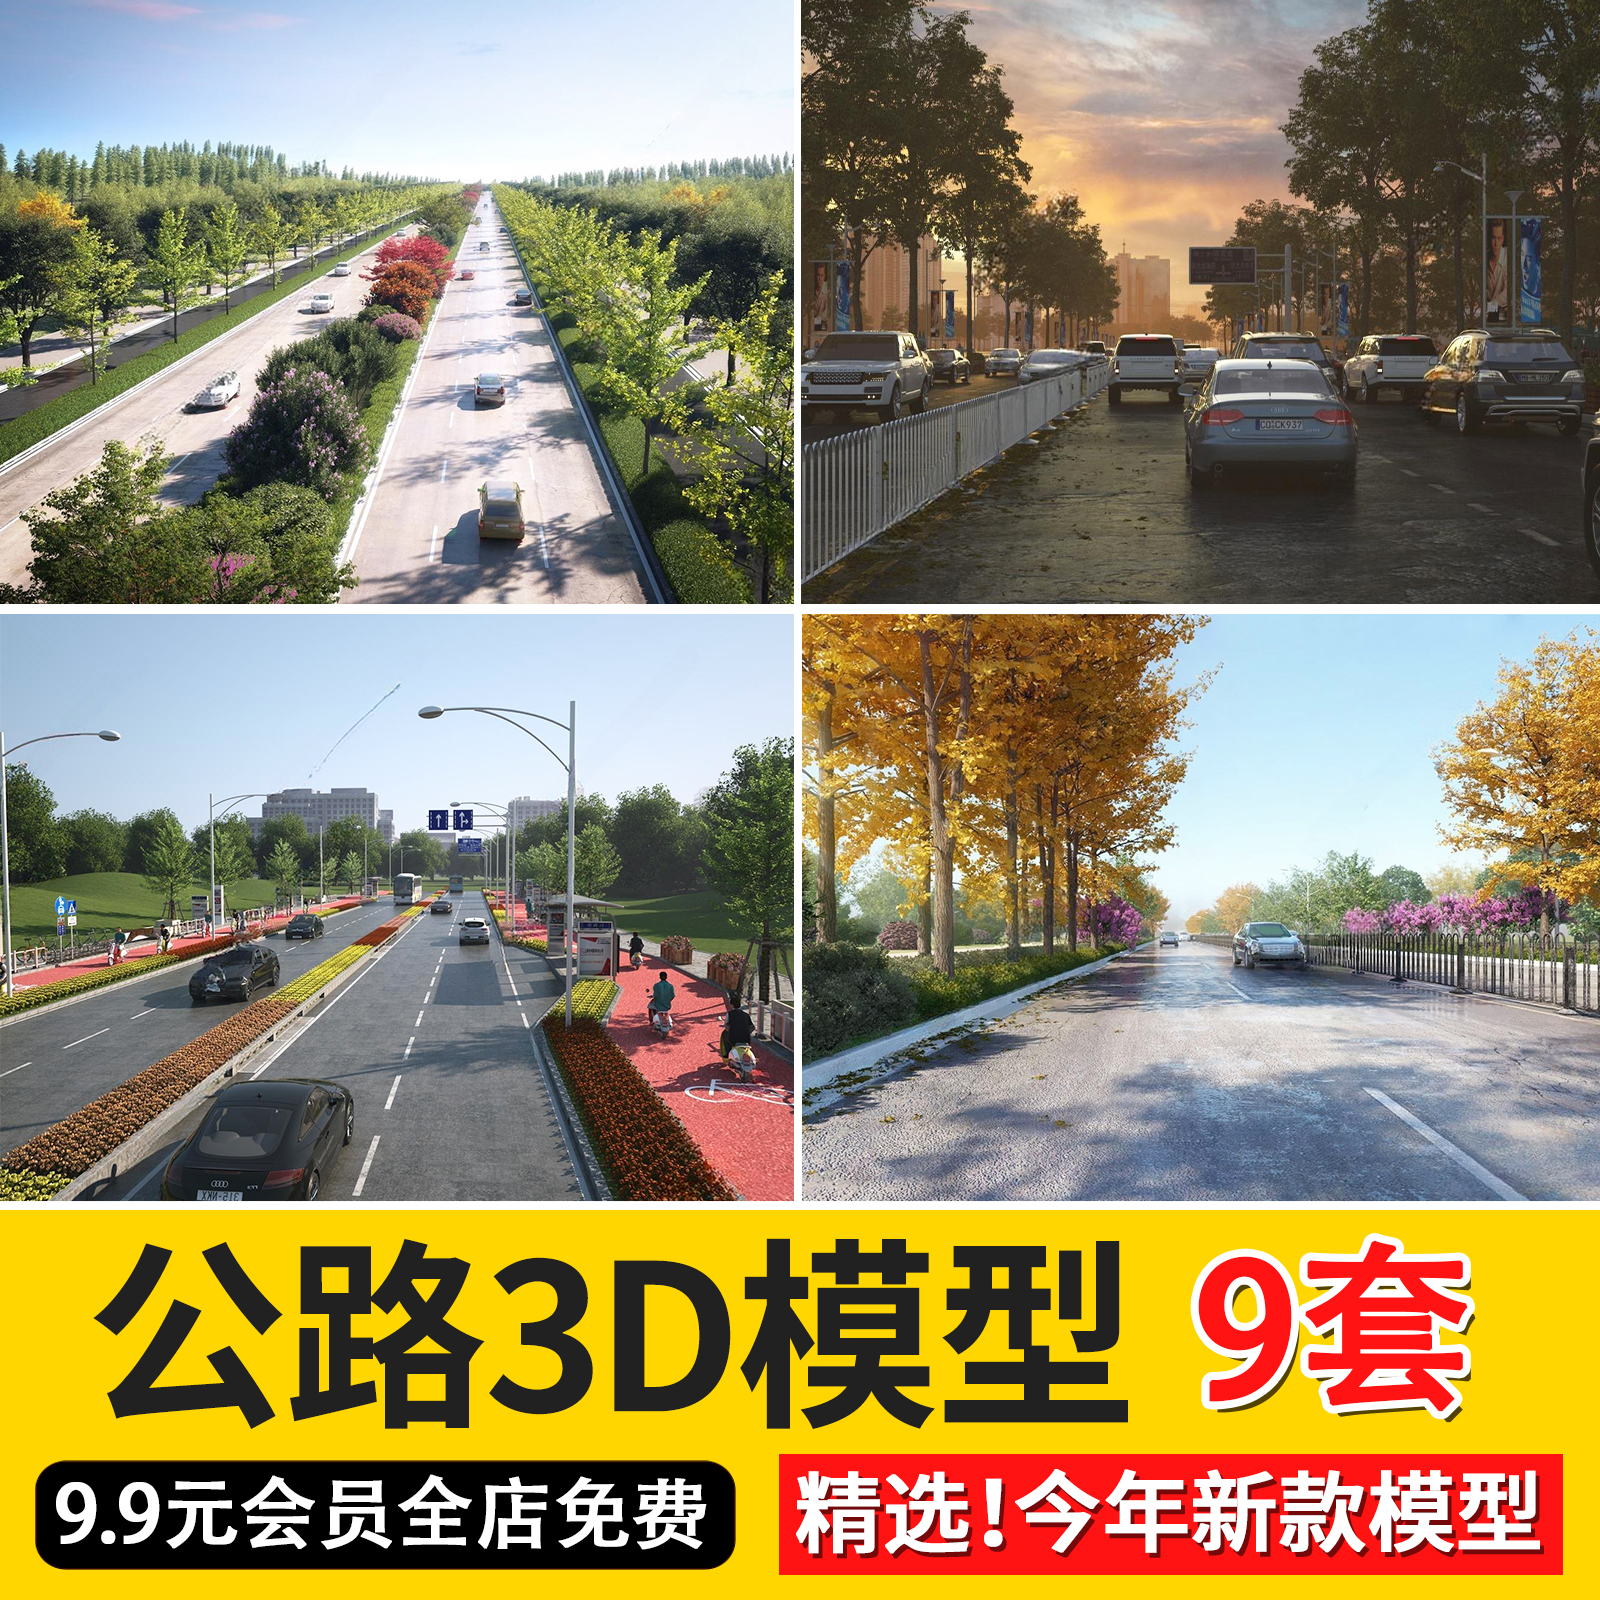 现代外景马路道路公路街道3D模型人行道车辆道路绿化3dmax模型